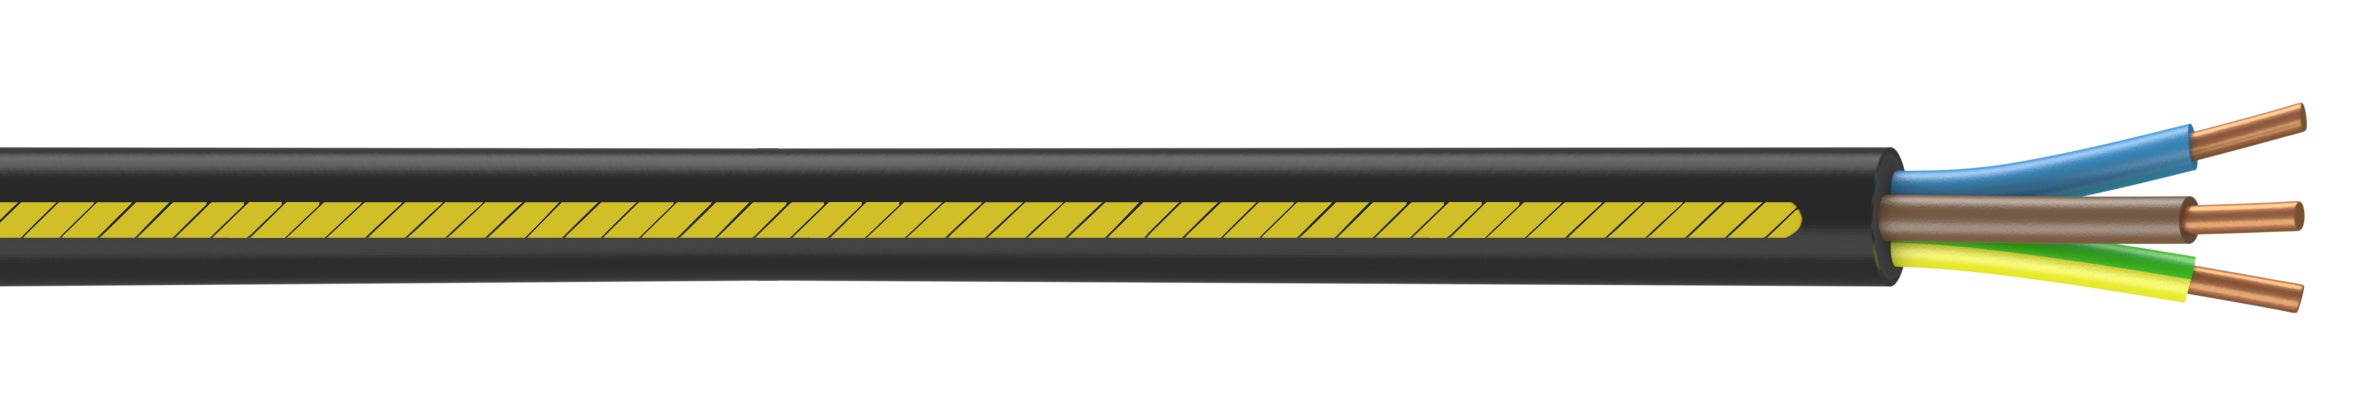 Fil électrique HO7VK 1.5mm² - Câble vendu en rouleau de 100m